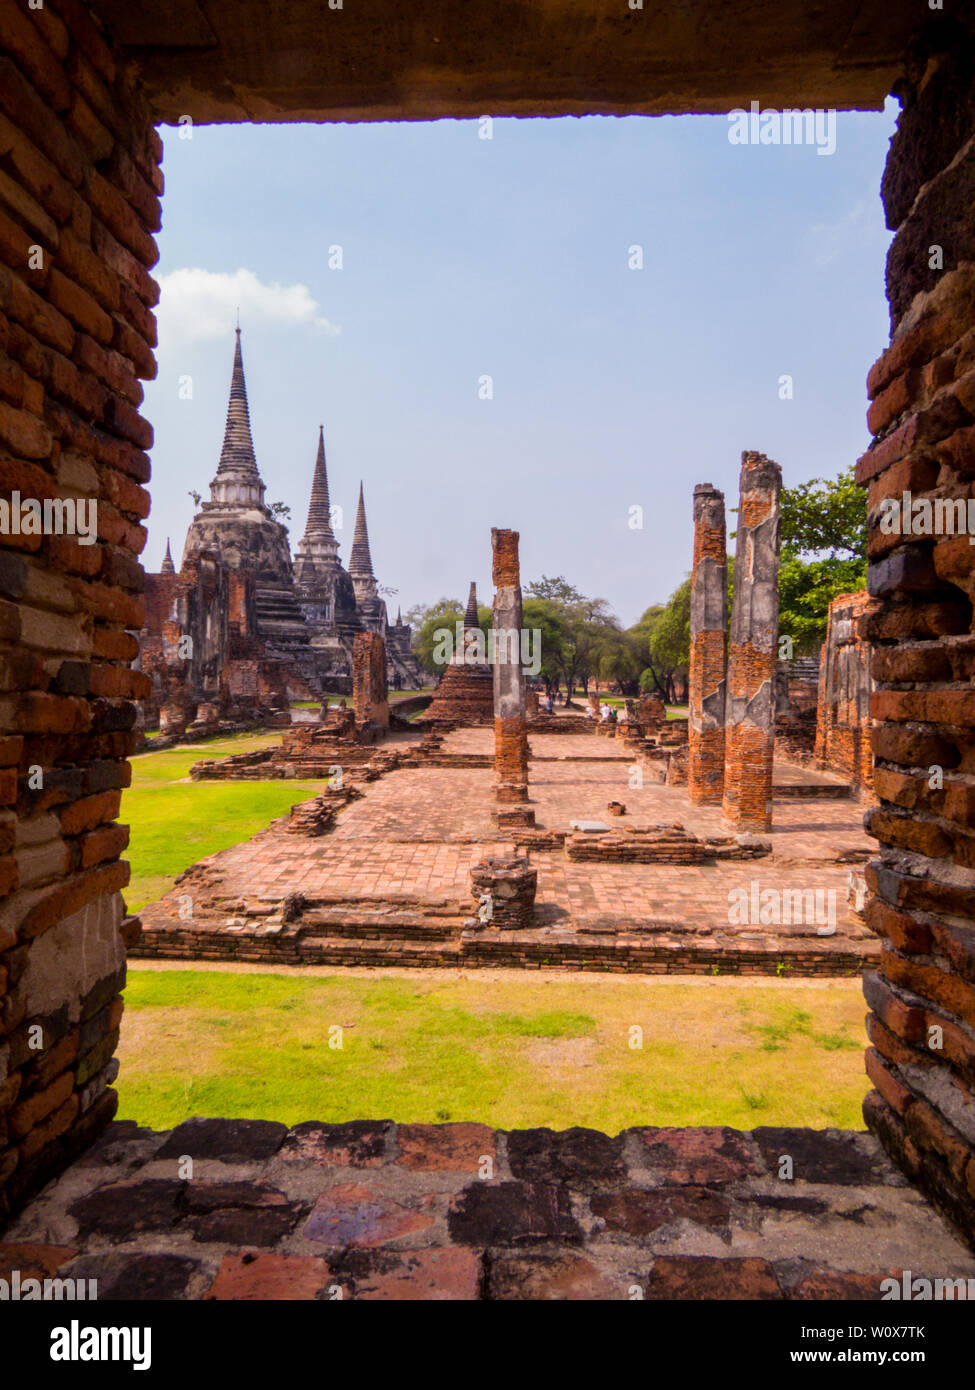 Wat Phra Sri Sanphet, Ayutthaya, Thailand Stock Photo